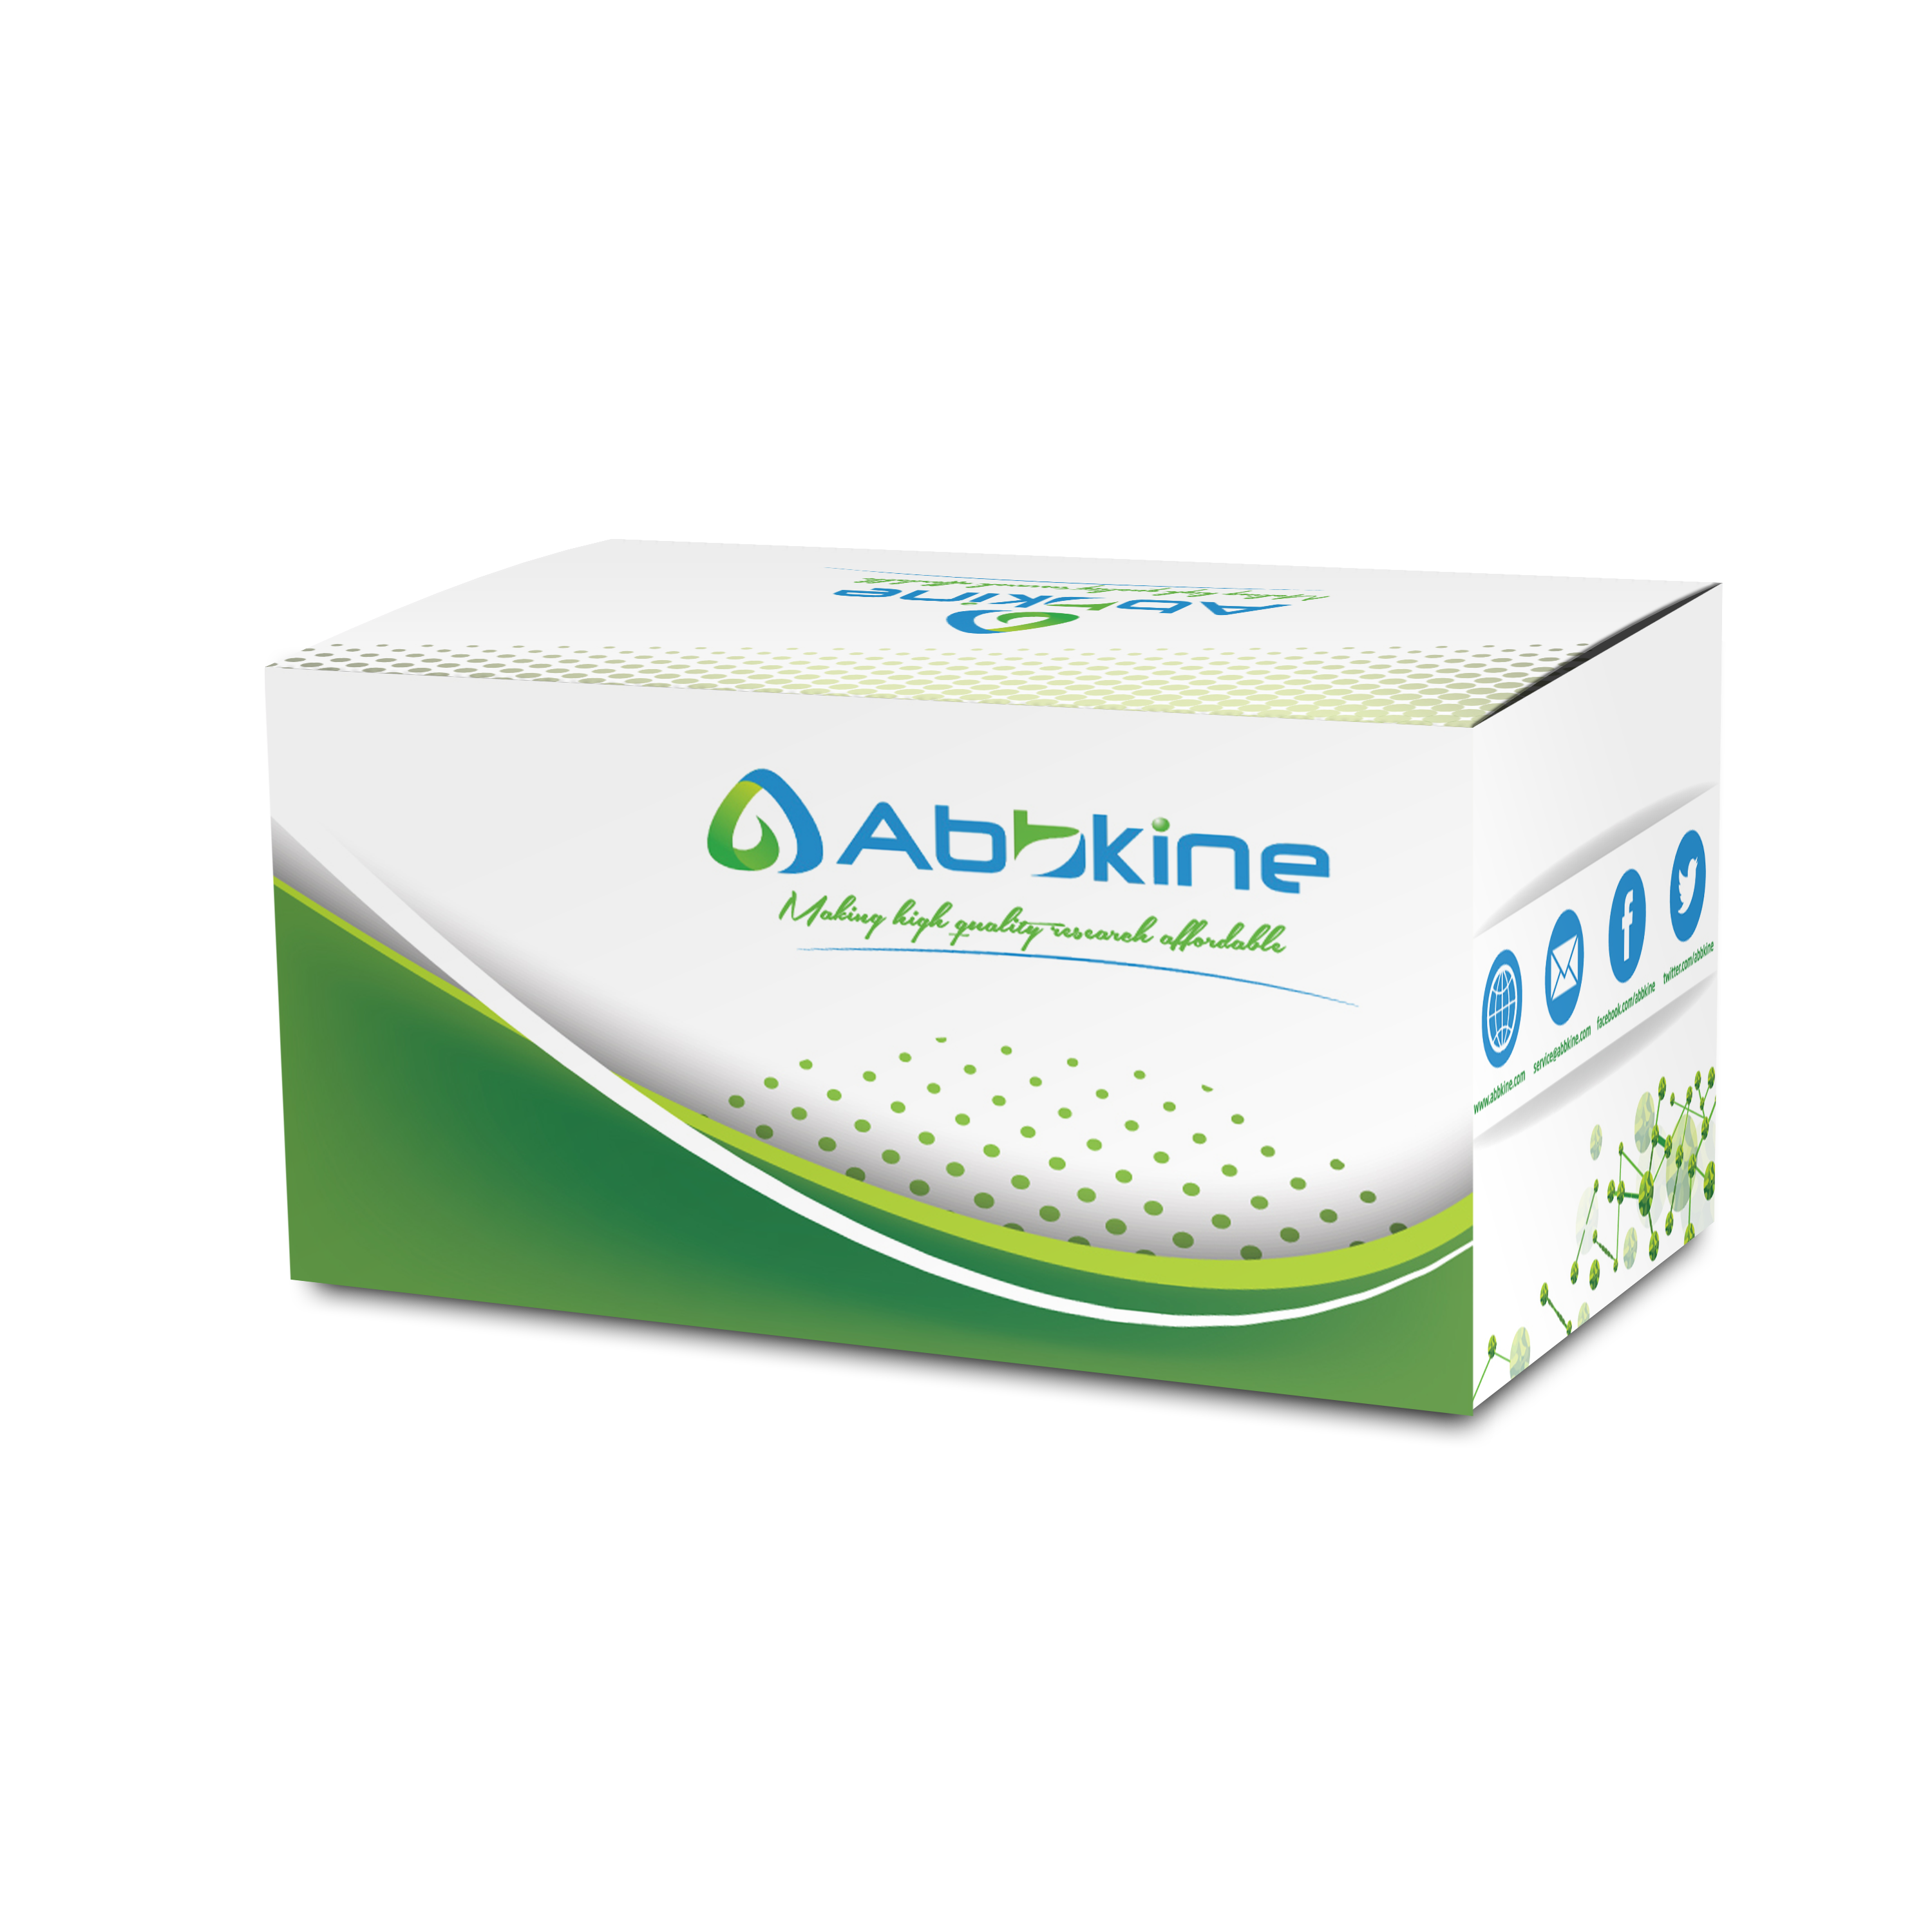 abbkine-kit.png&&Fig. CheKine Free Cholesterol (FC) Colorimetric Assay Kit